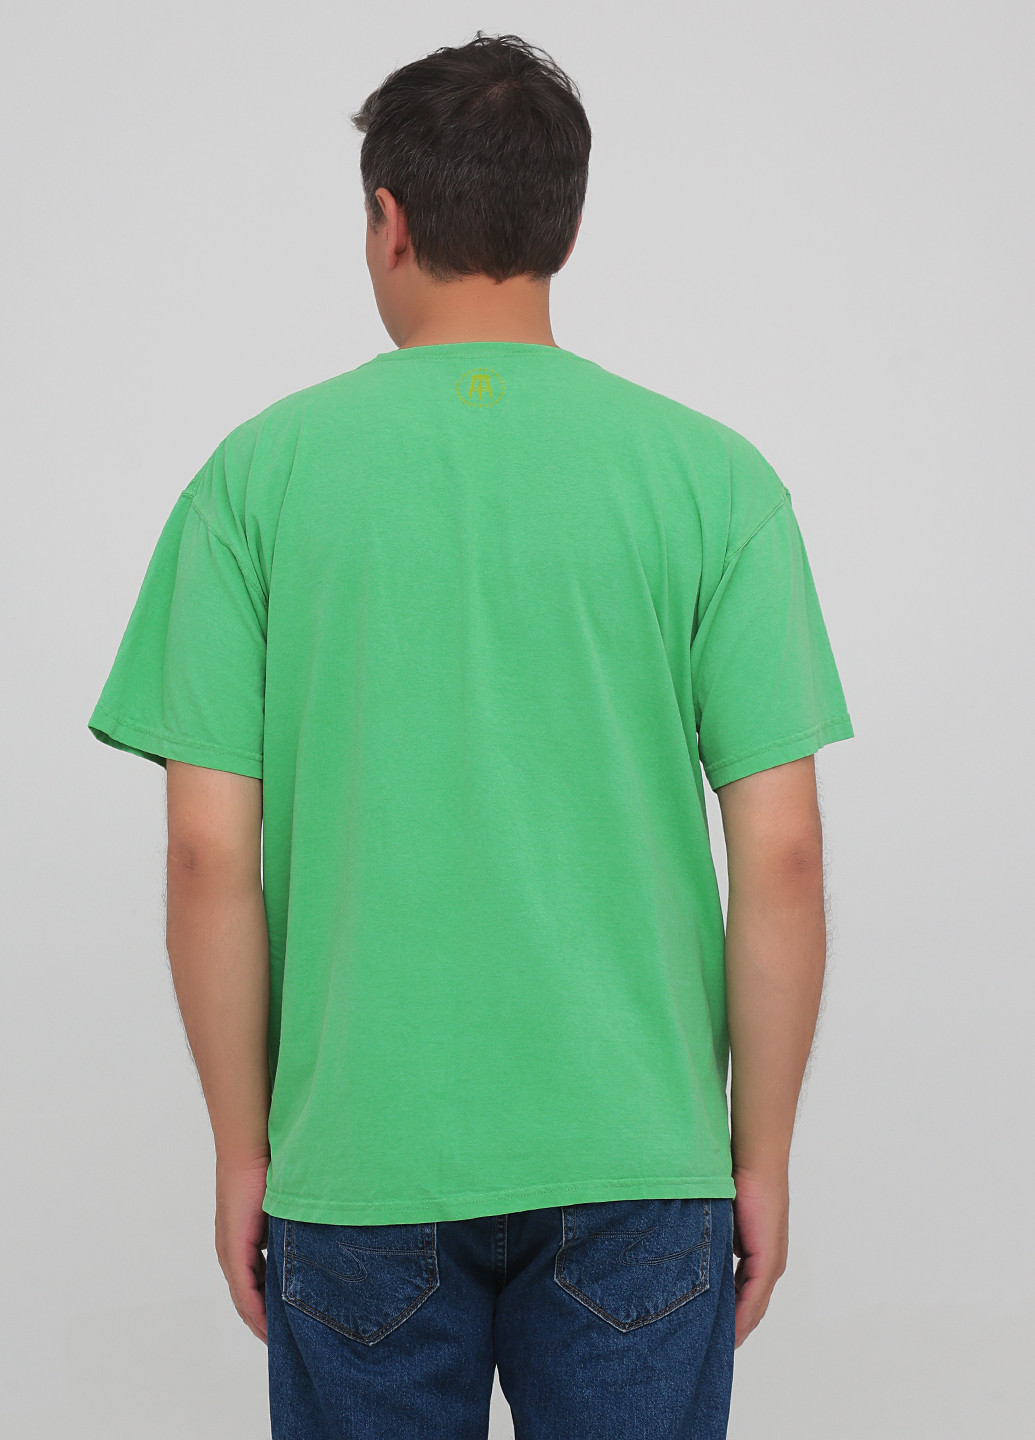 Светло-зеленая футболка The original retro brand